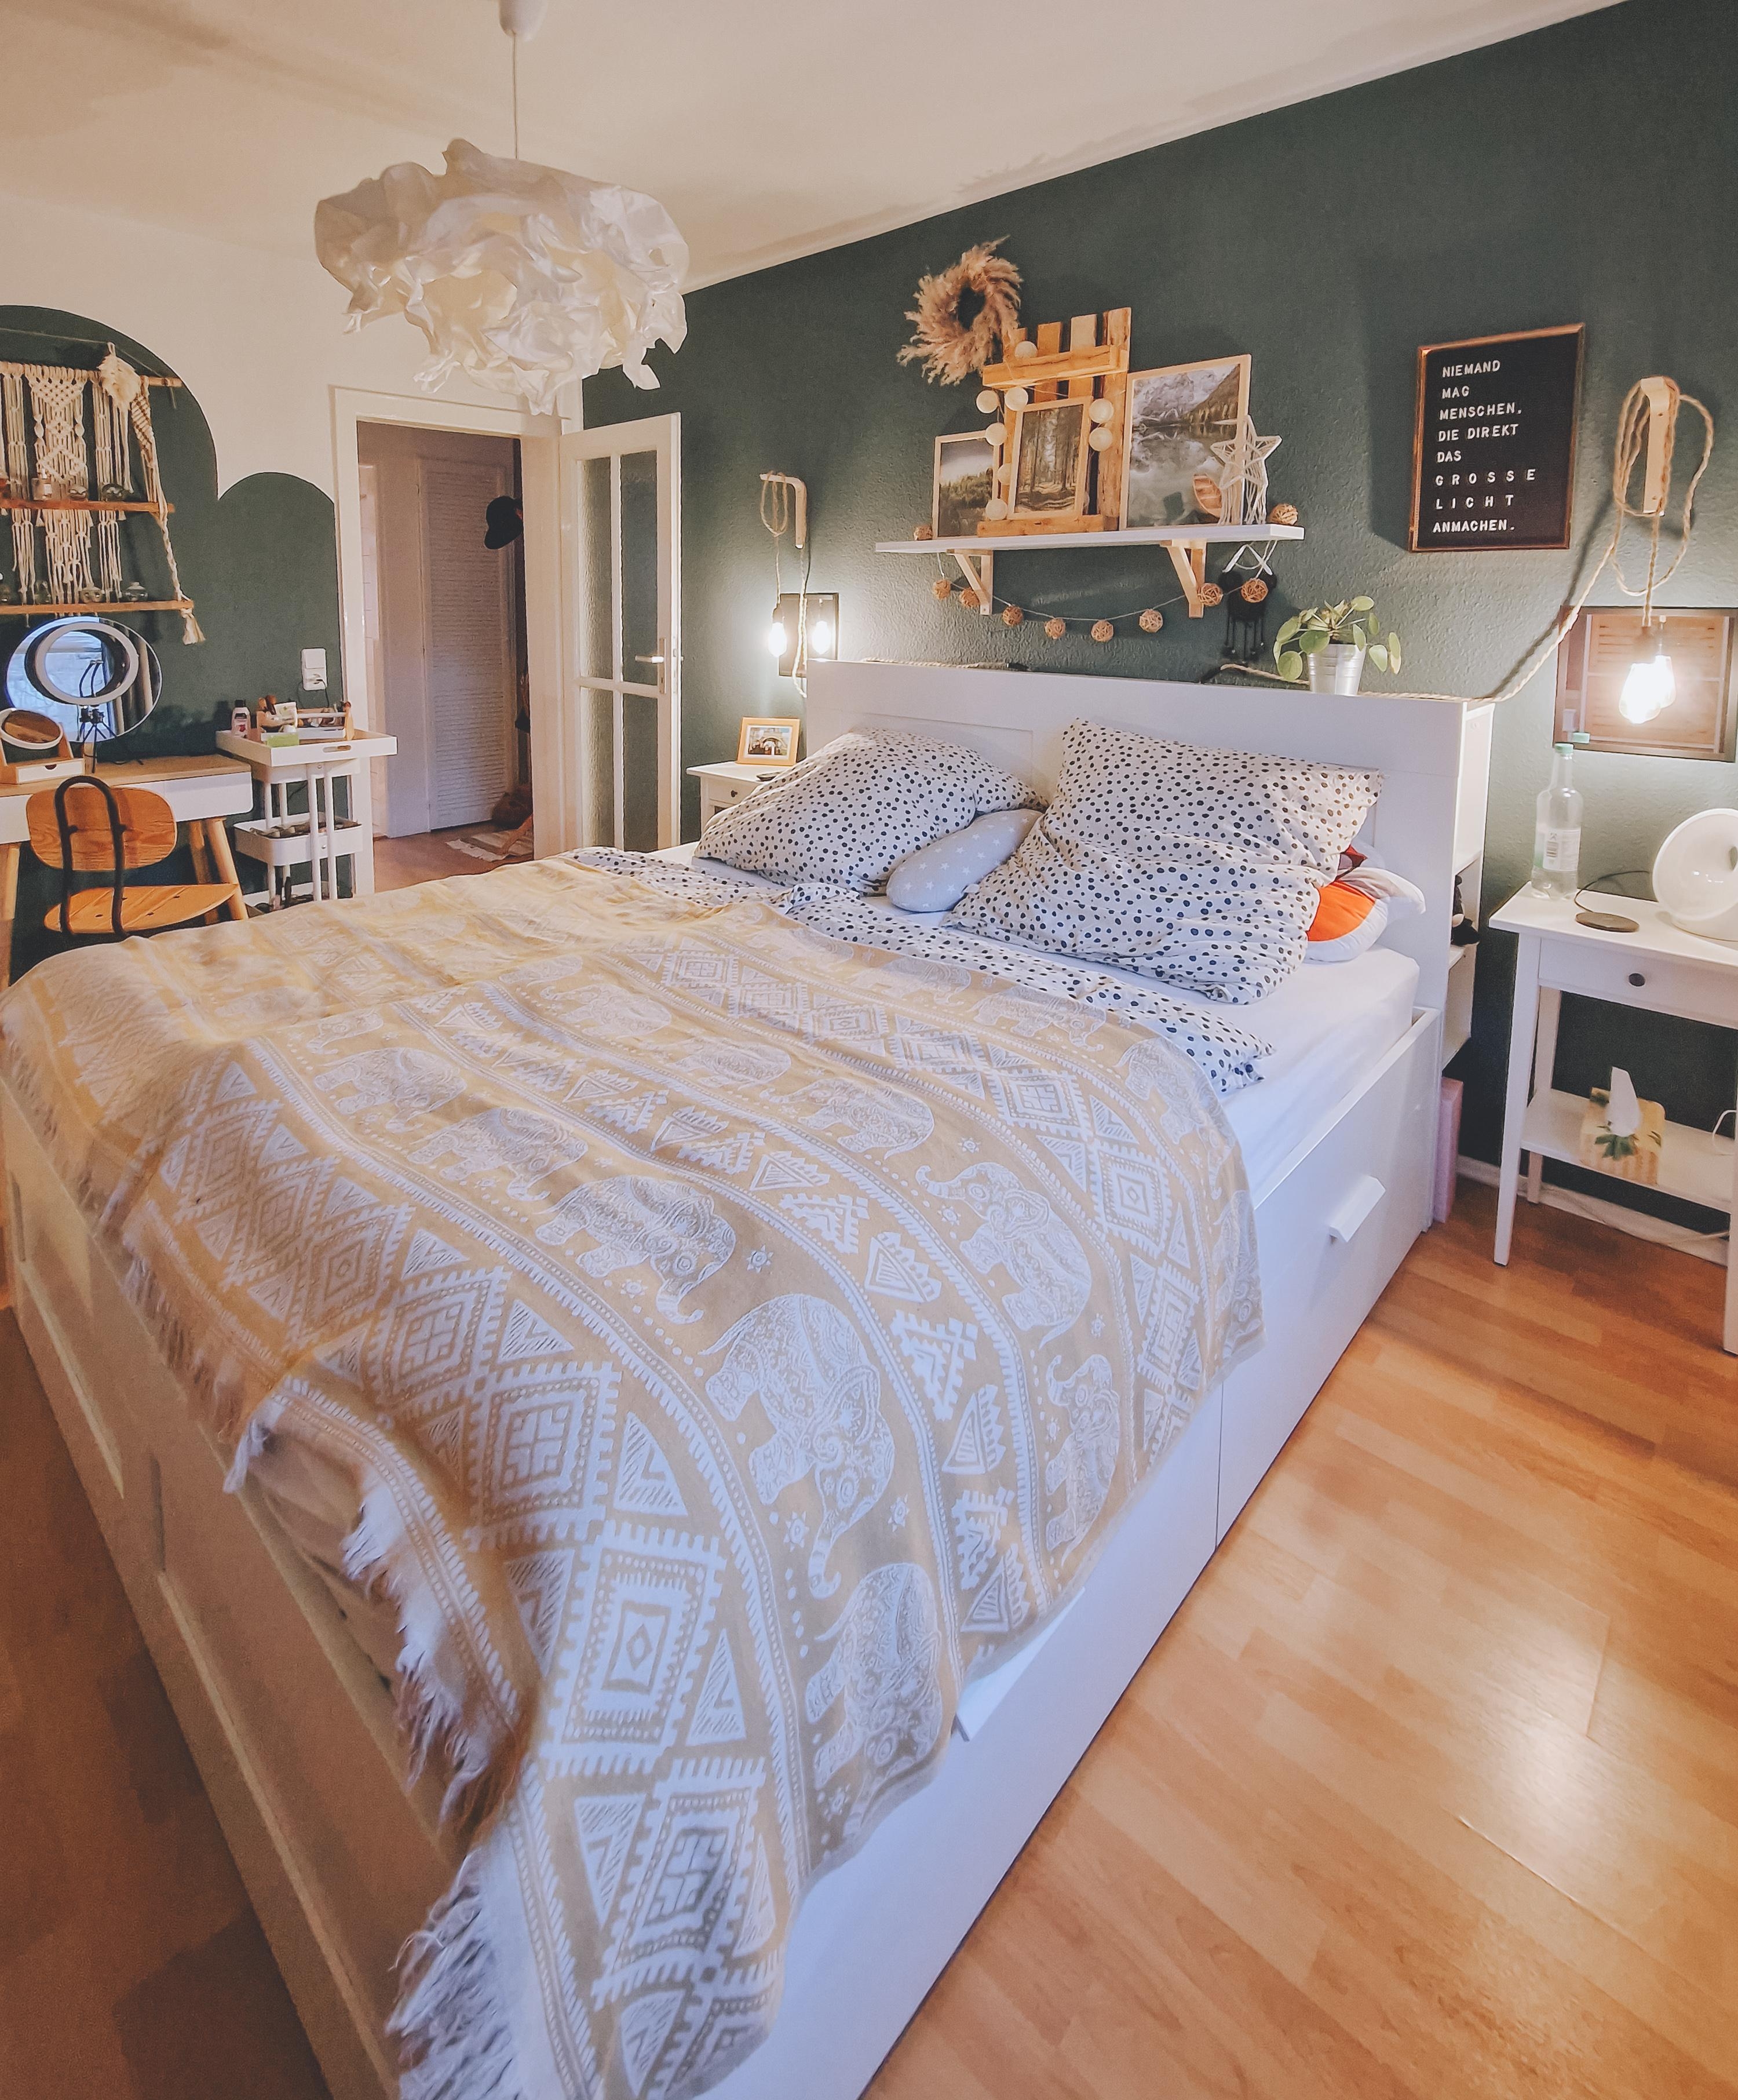 Verliebt ins #Schlafzimmer #boho #bohostyle #grün #wandgestaltung #bilderwand #diyleuchte #wandfarbe #couchliebt